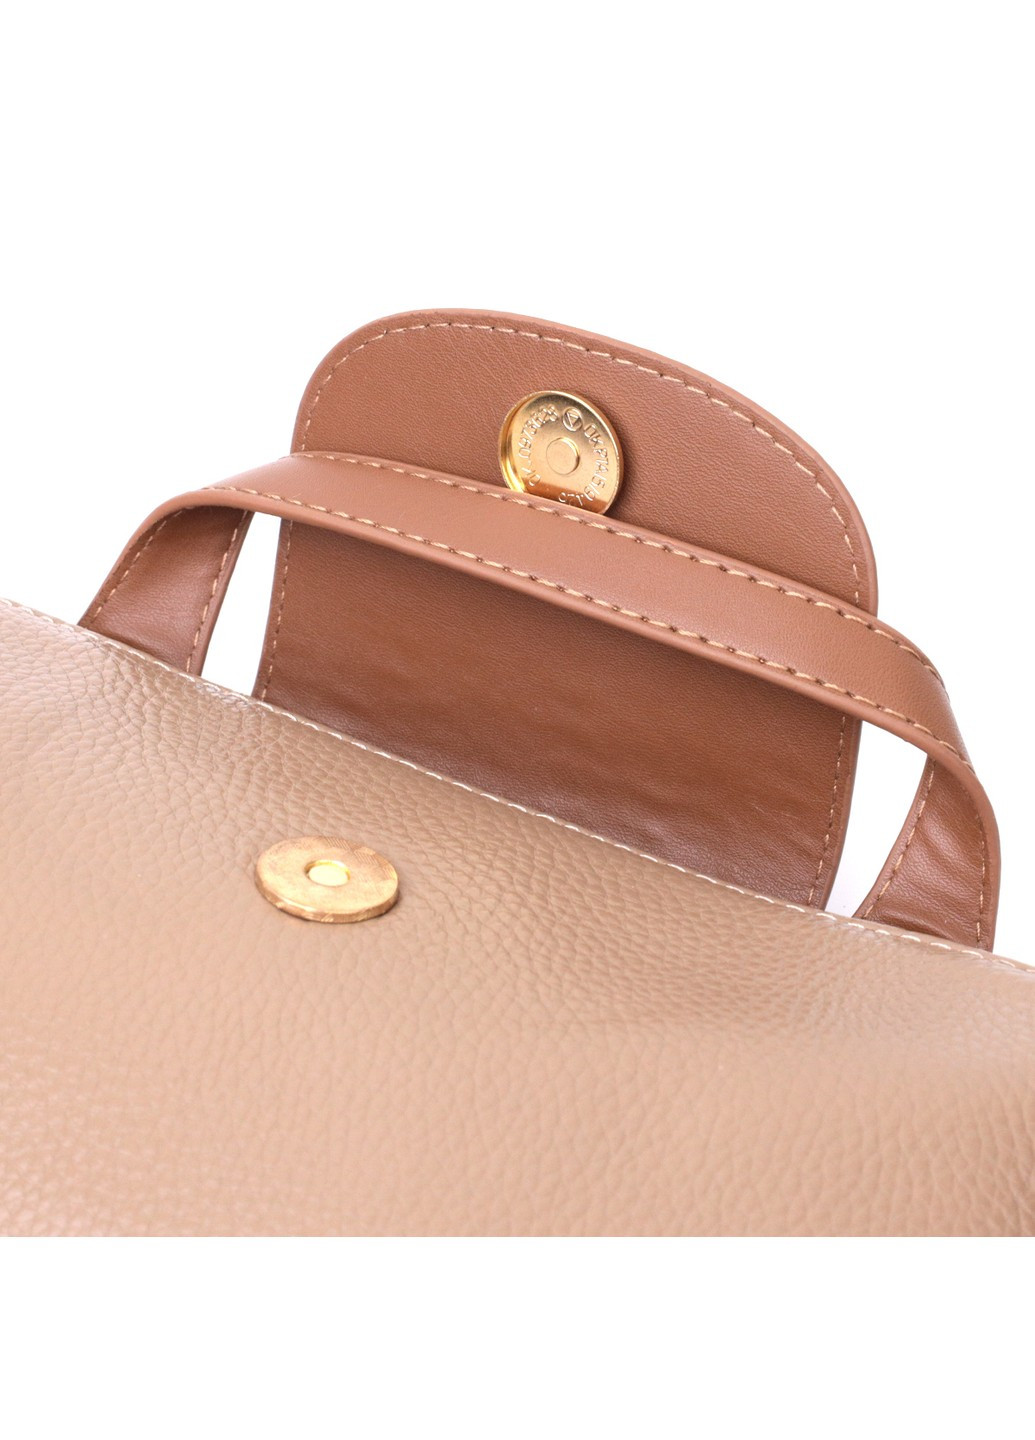 Идеальная женская сумка с интересным клапаном из натуральной кожи 22251 Бежевая Vintage (276461819)